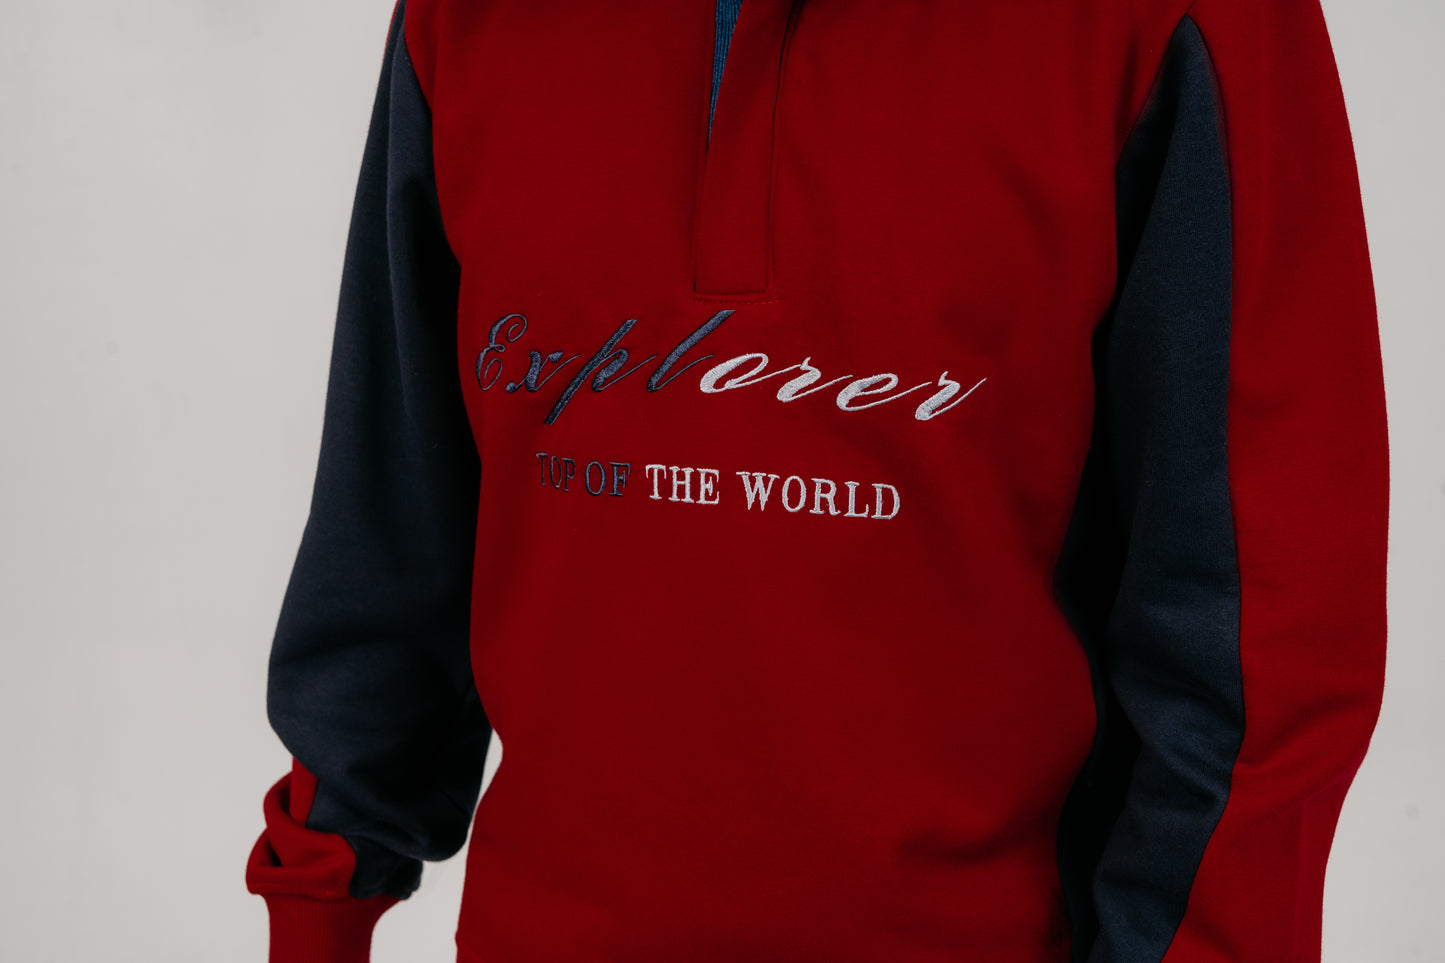 Embroidery Half-Zip Sweatshirt (Explorer)